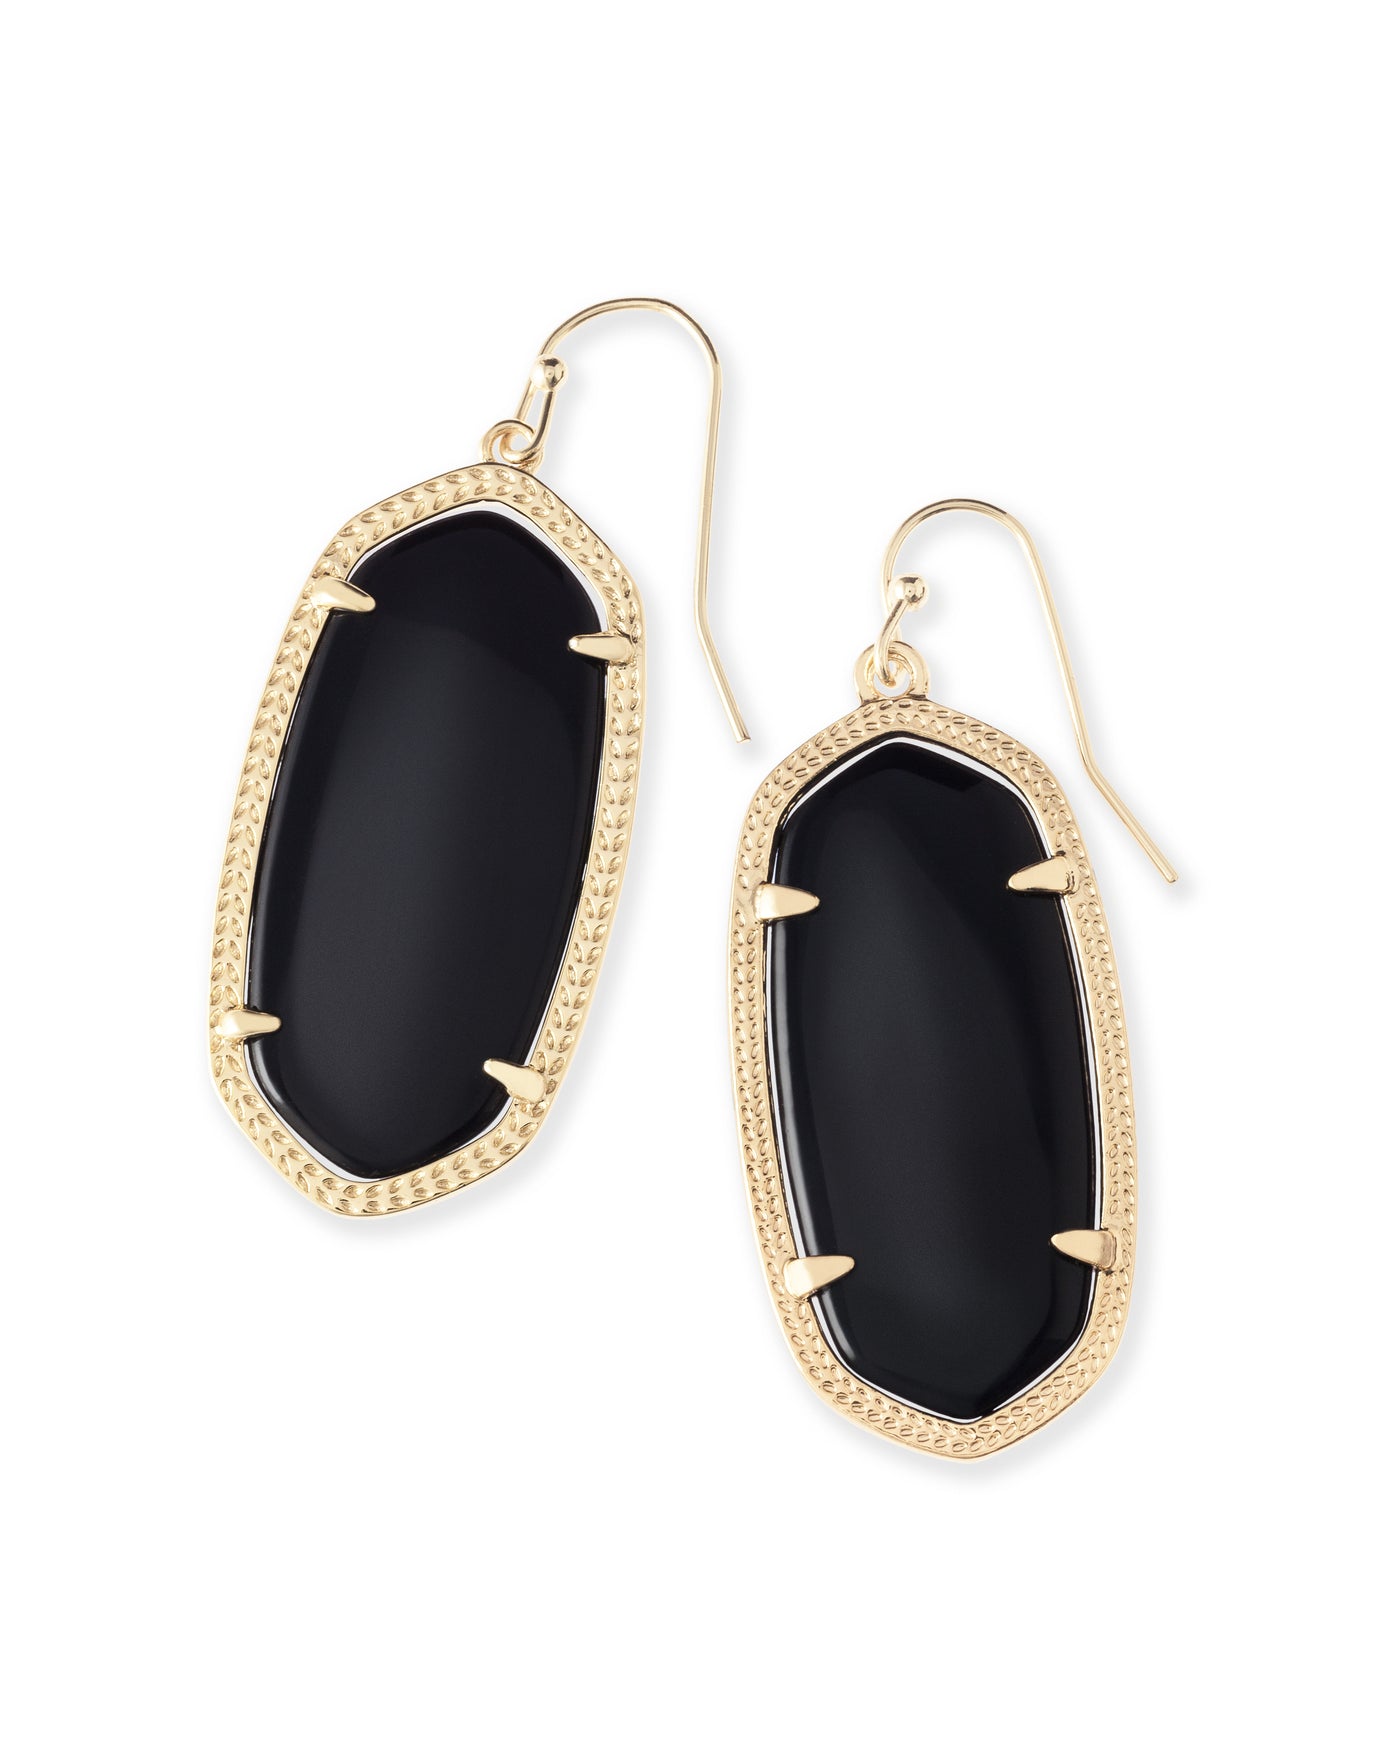 Elle Gold Drop Earrings in Black Opaque Glass | Kendra Scott